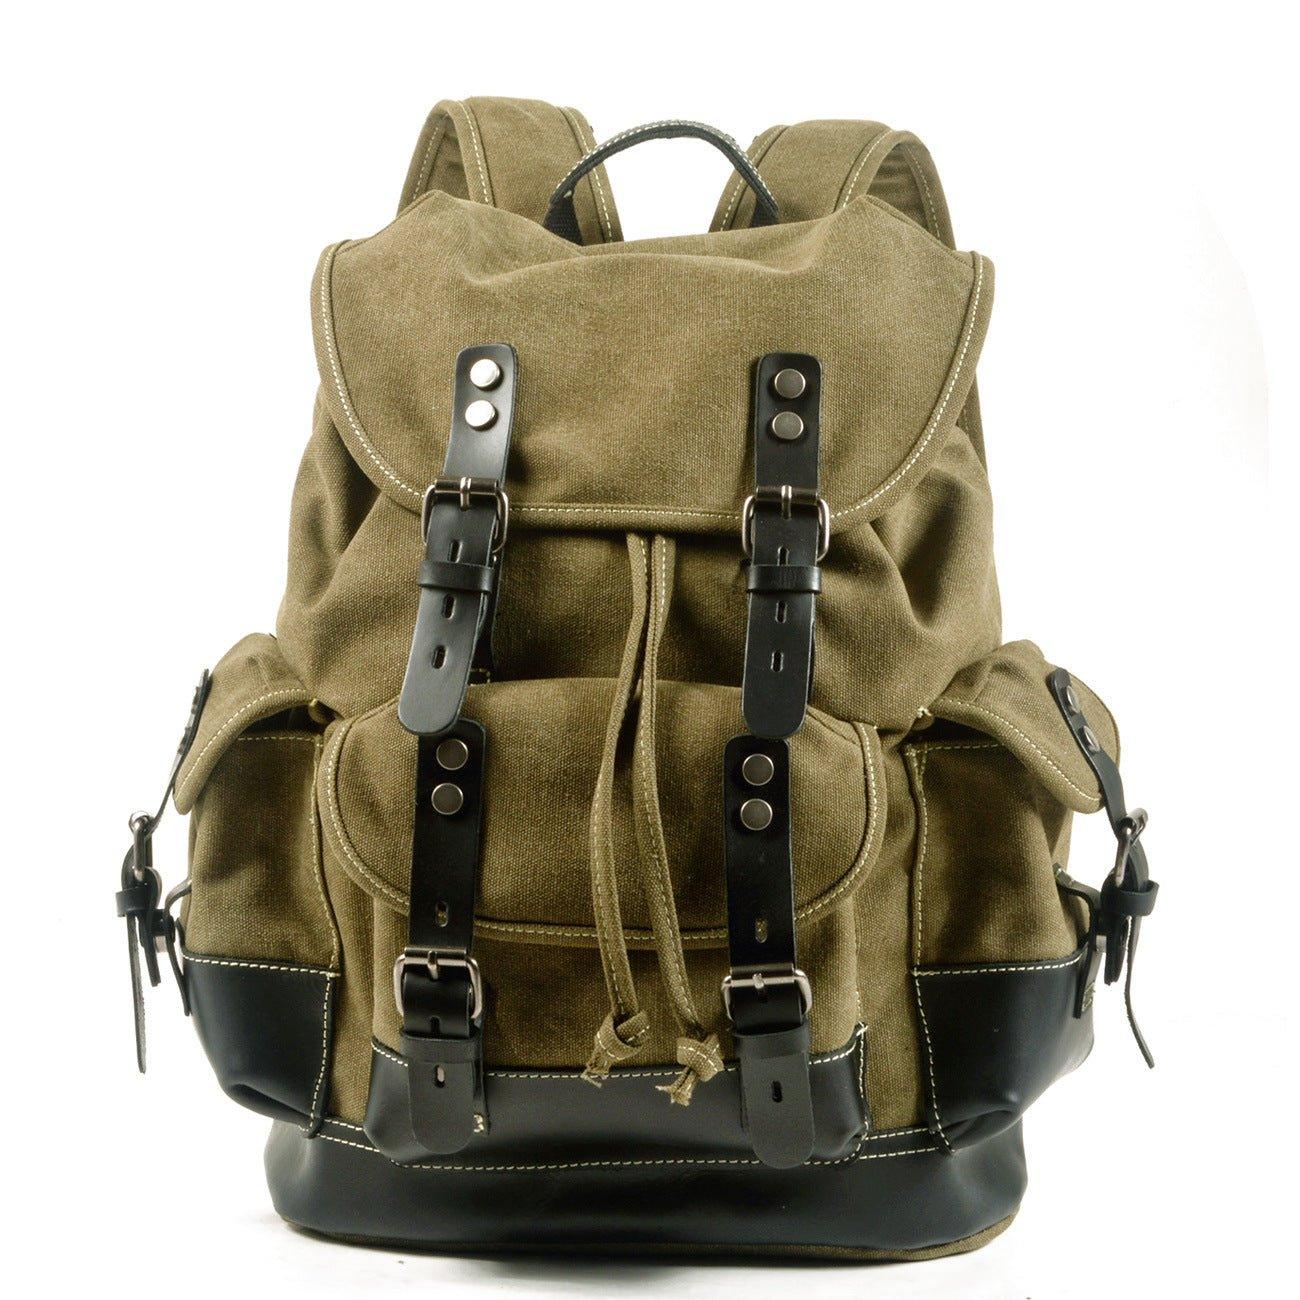 https://woosir.com/cdn/shop/products/woosir-vintage-canvas-backpack-waterproof-traveling-hikingwoosir7788954-army-green-with-black-leather-458430.jpg?v=1657638277